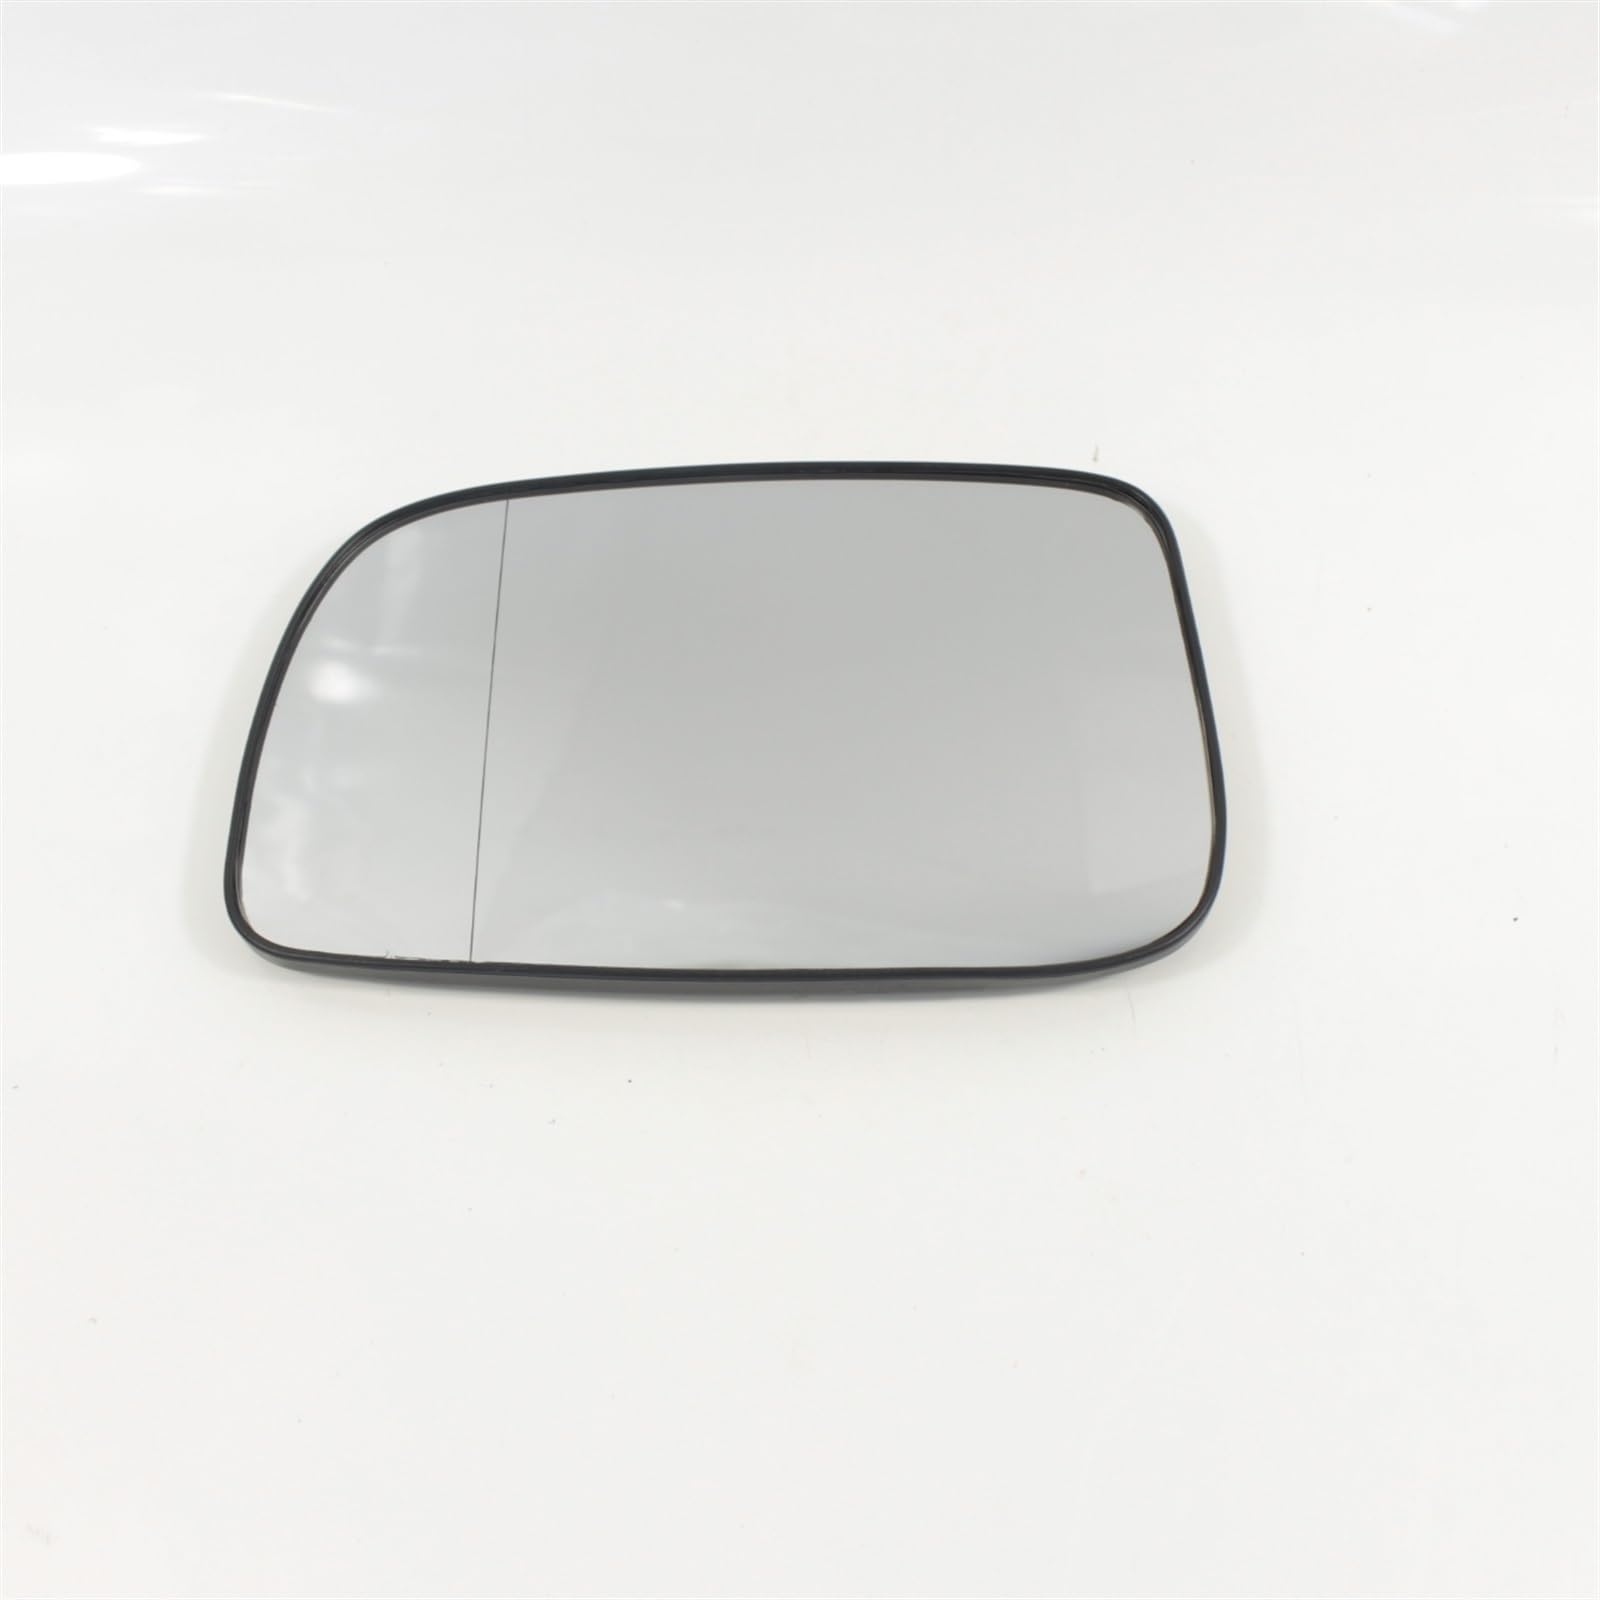 Ersatzspiegelglas Für Toyota Für Corolla 2004-2008 Auto Tür Flügel Spiegel Glas Spiegelglas Ersatz (Size : Left side) von NEZIH